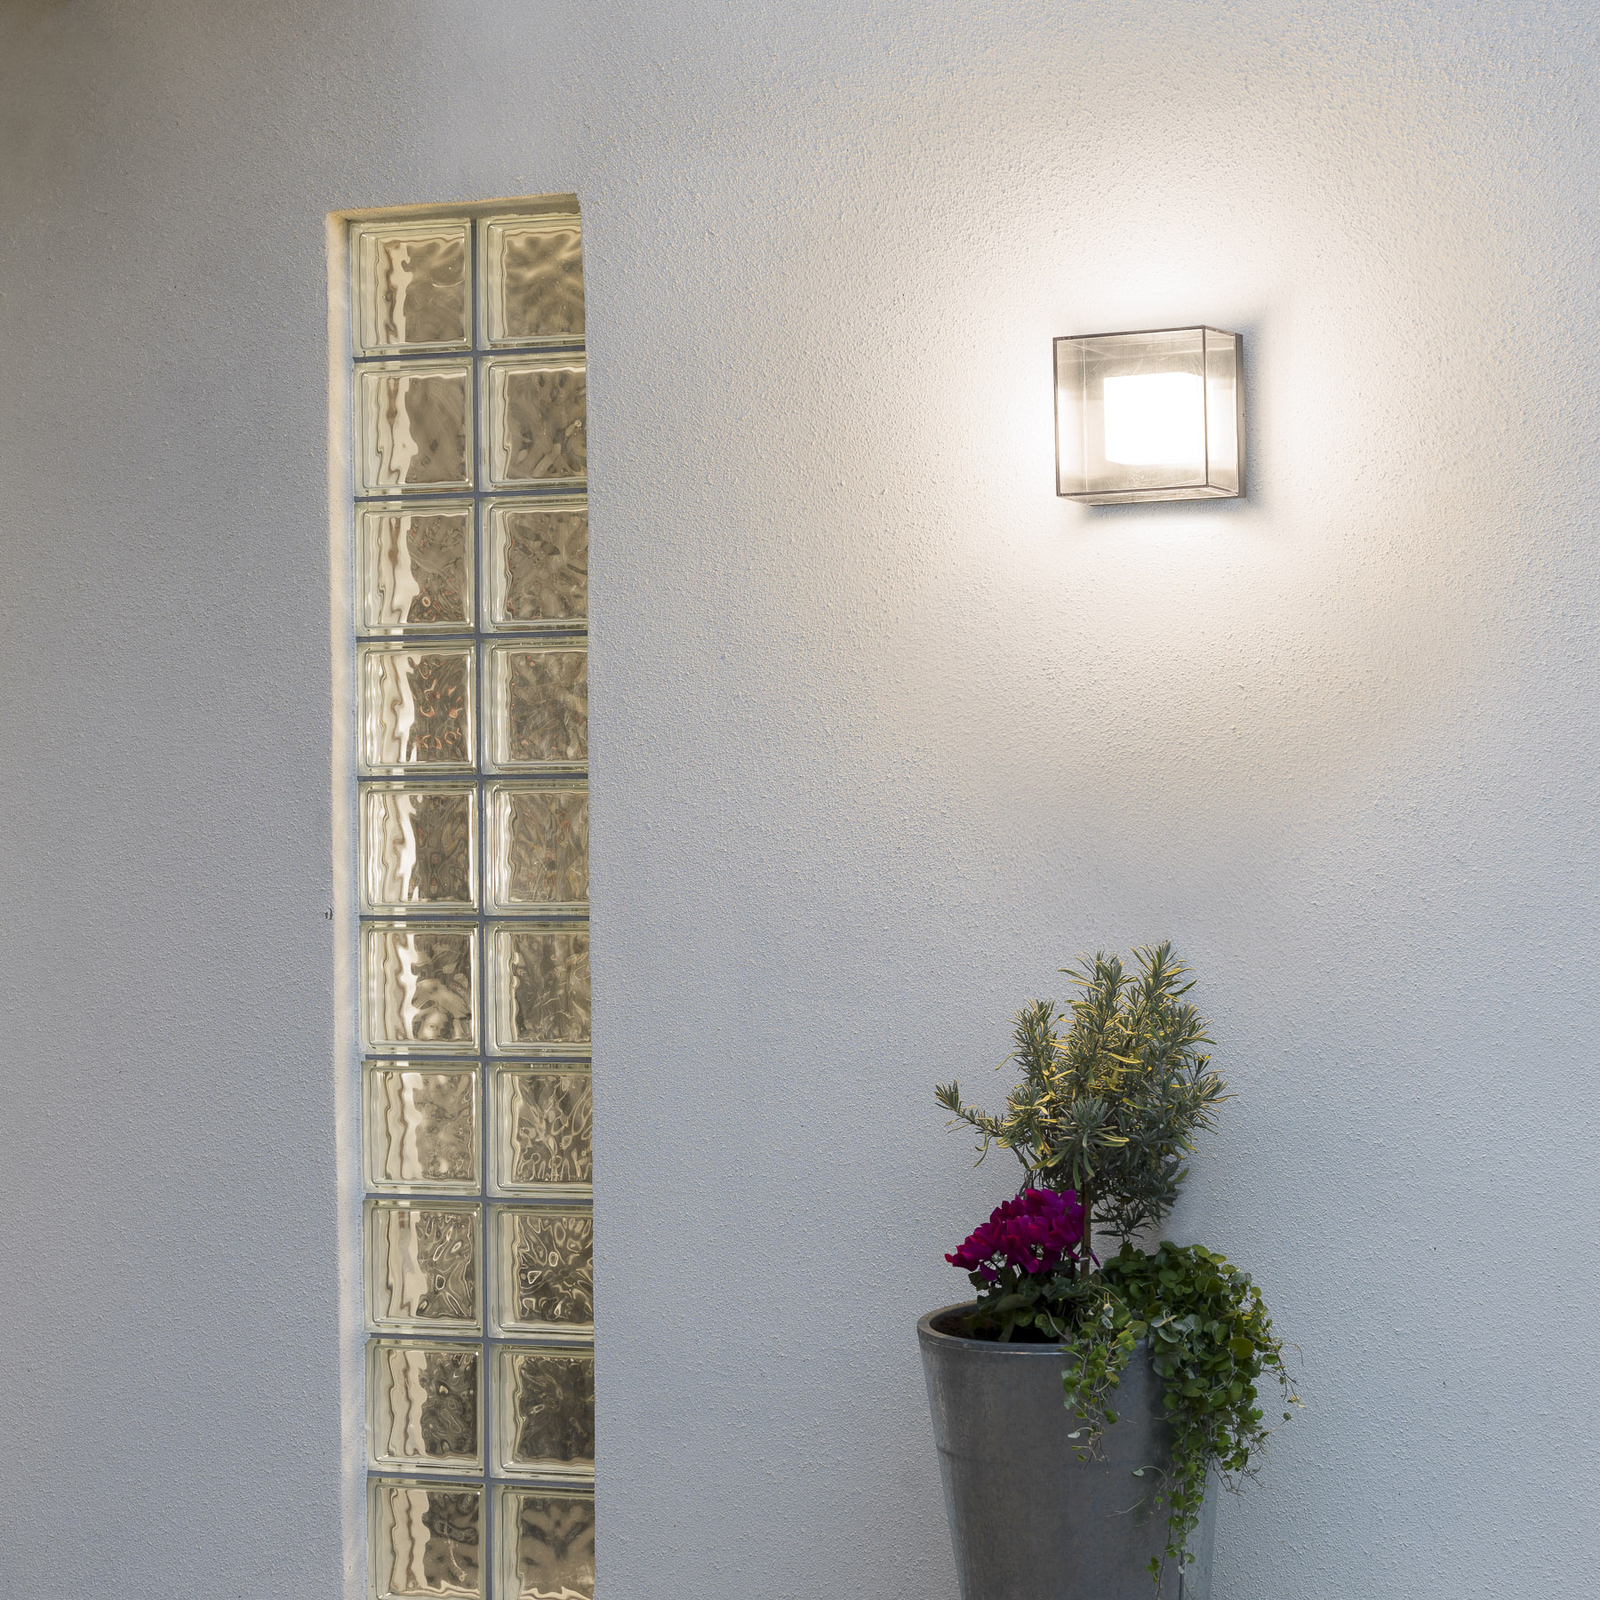 Kwadratowa zewnętrzna lampa ścienna LED Sanremo